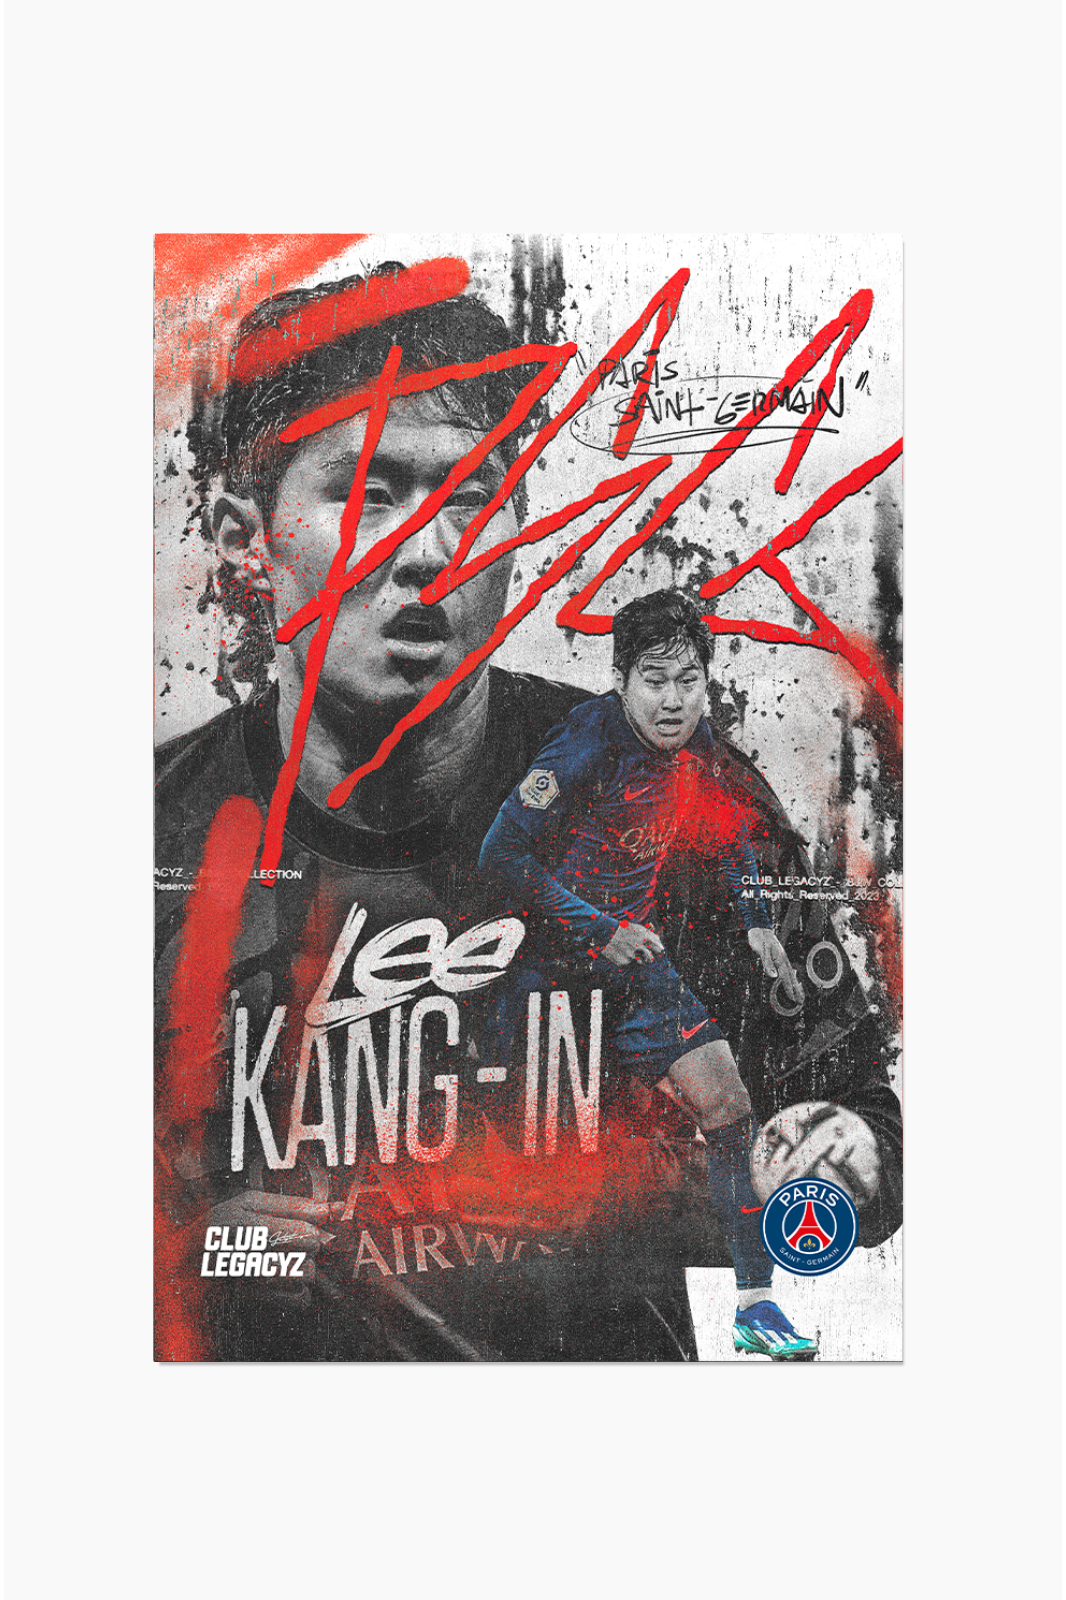 Paris Saint-Germain - Lee Kang-in Black & White Poster limited to 100